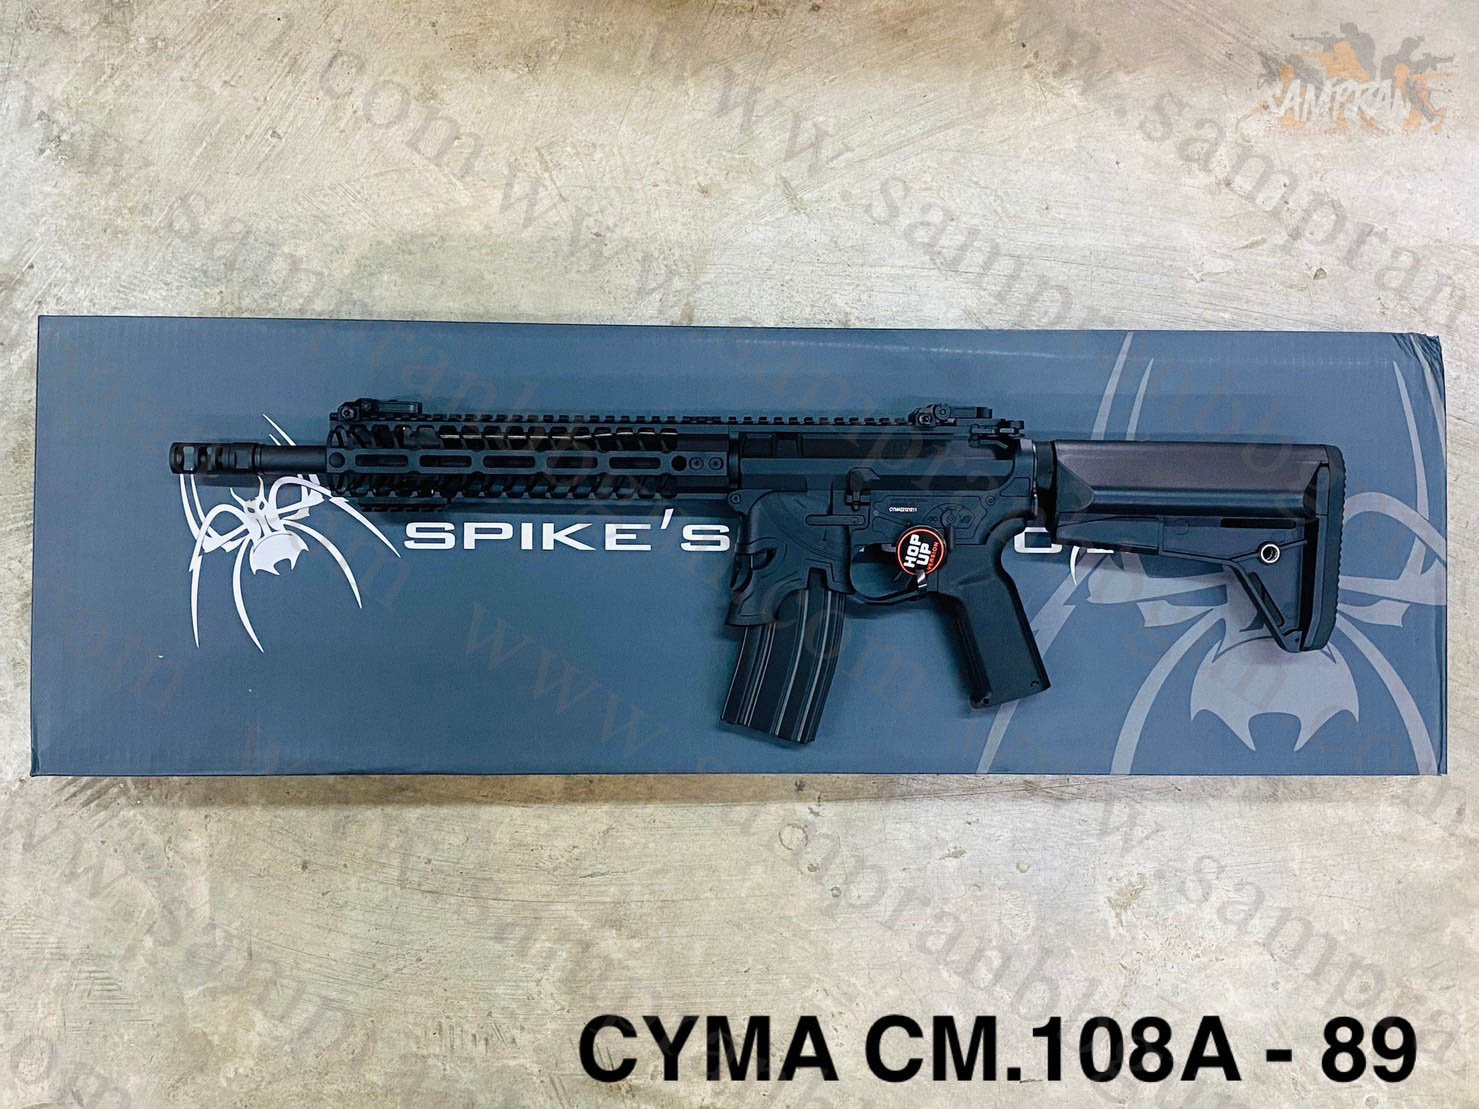 CYMA CM.108A Spike's Rare Breed Spartan SBR - EMG Arms